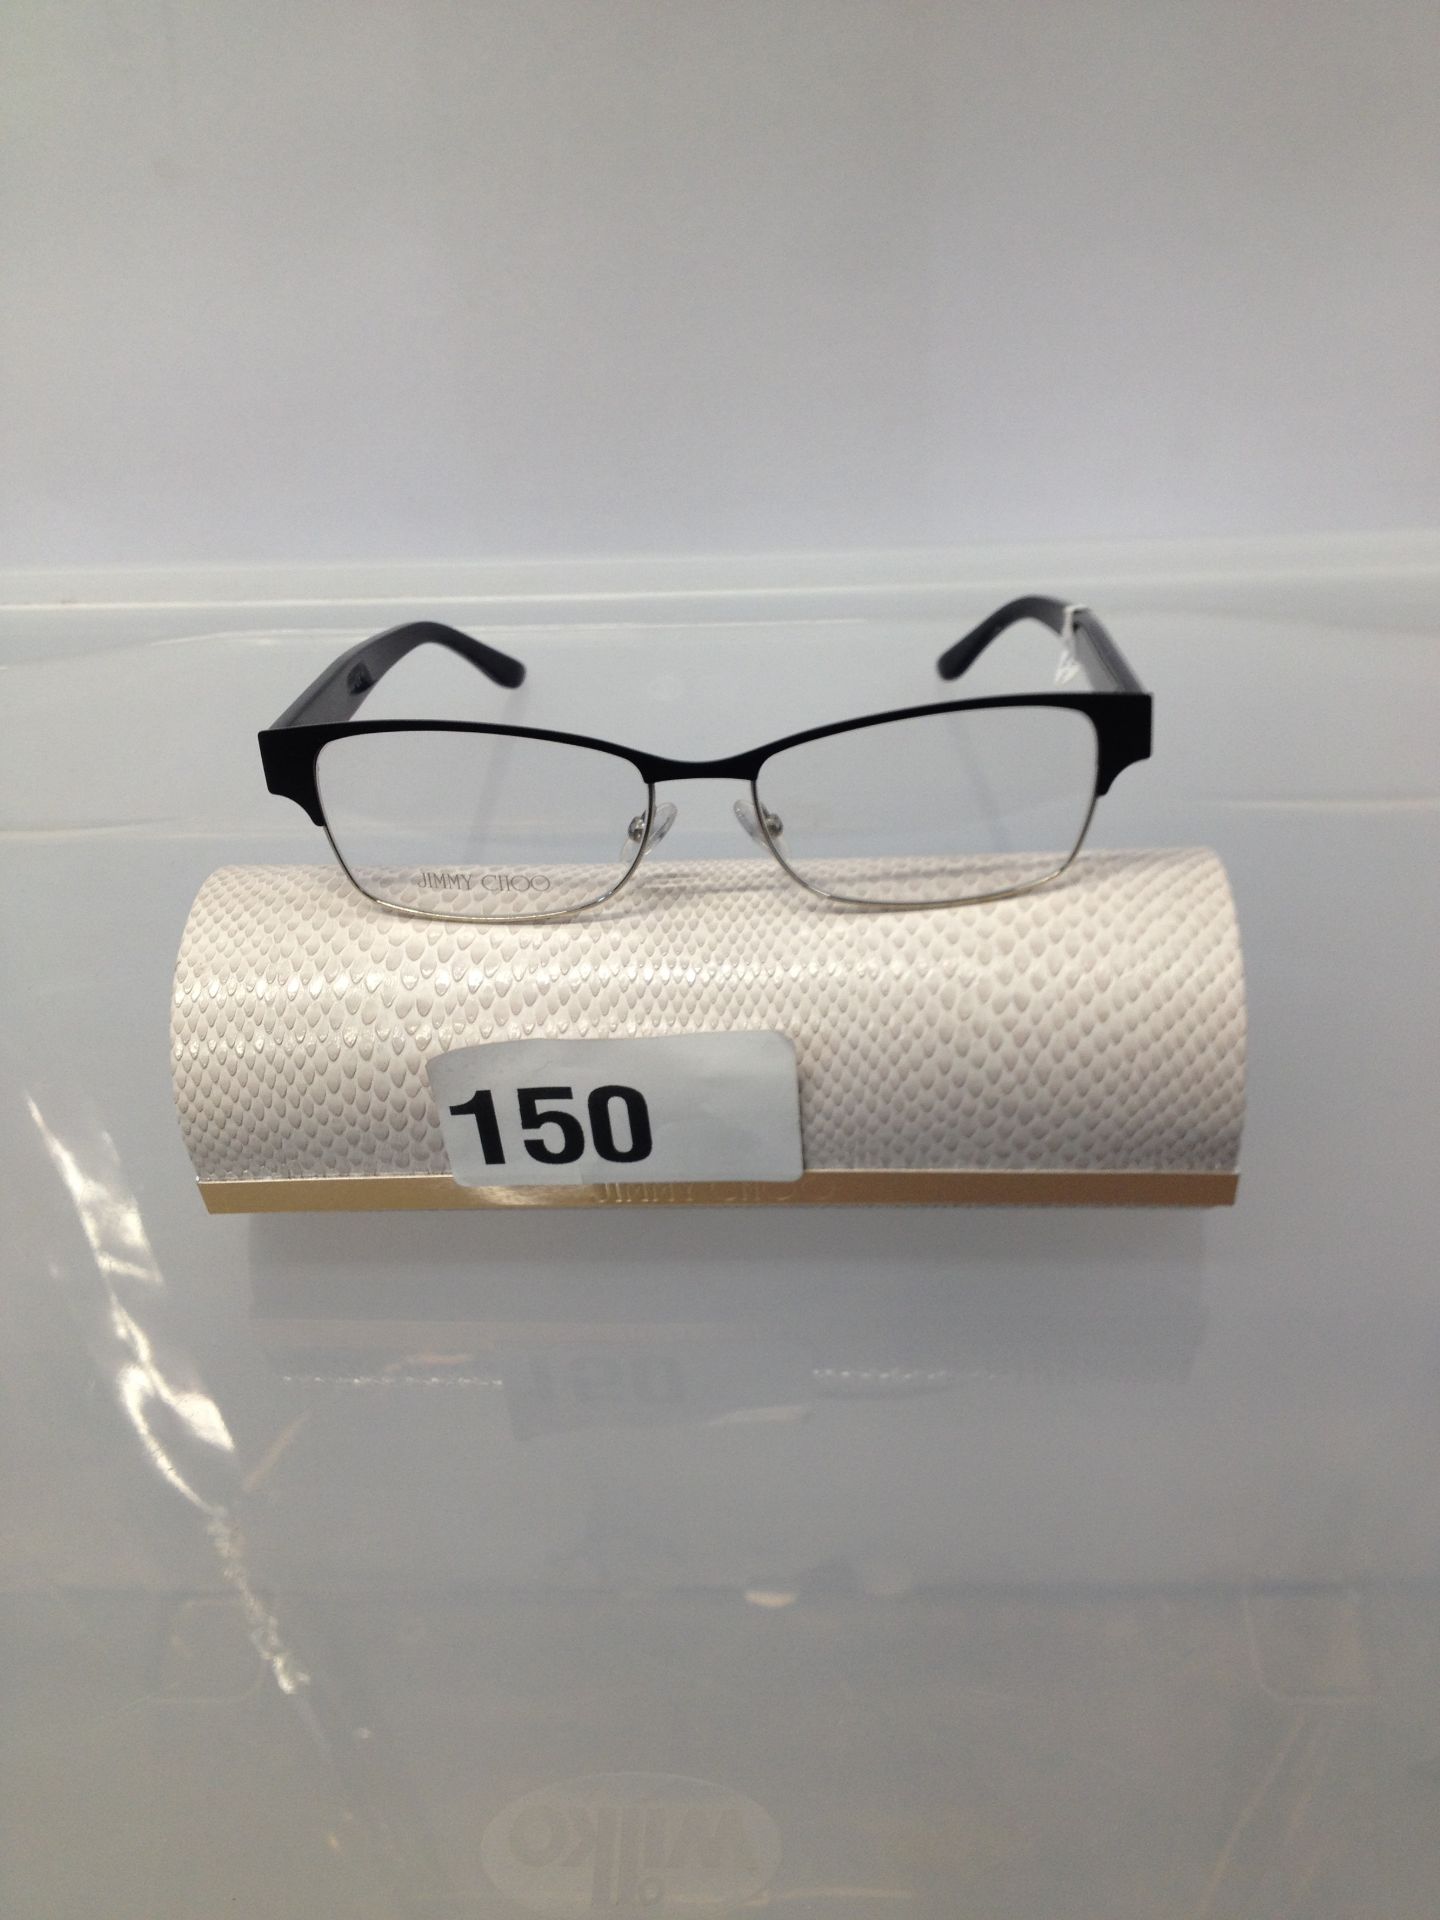 1 x Jimmy Choo glasses